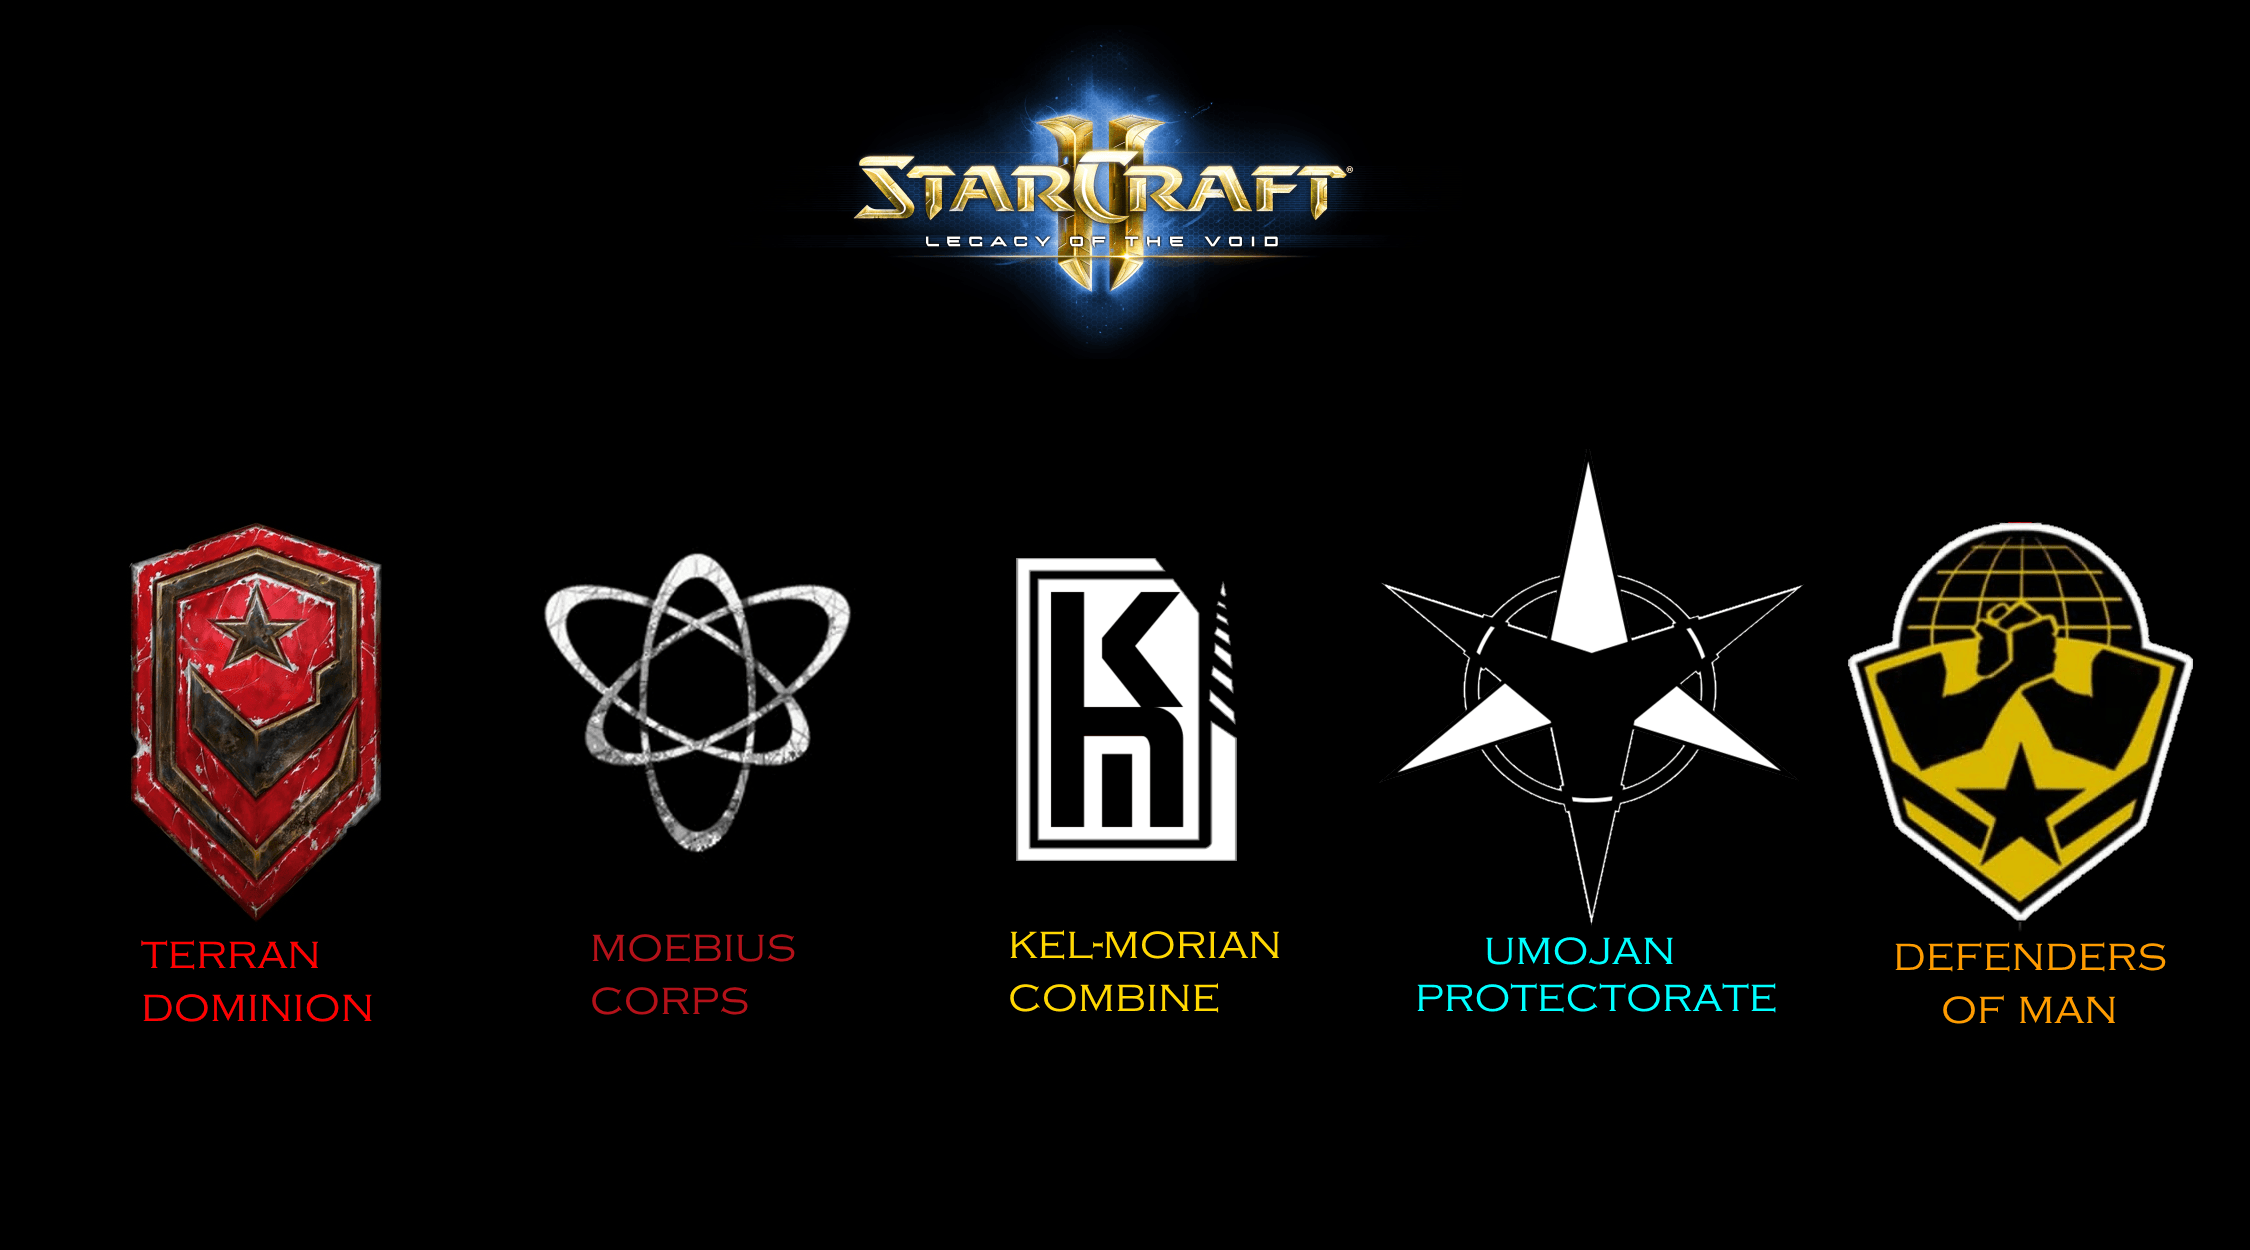 Terran Logo - Overview - Starcraft 2 - Terran Military Organizations - Assets ...